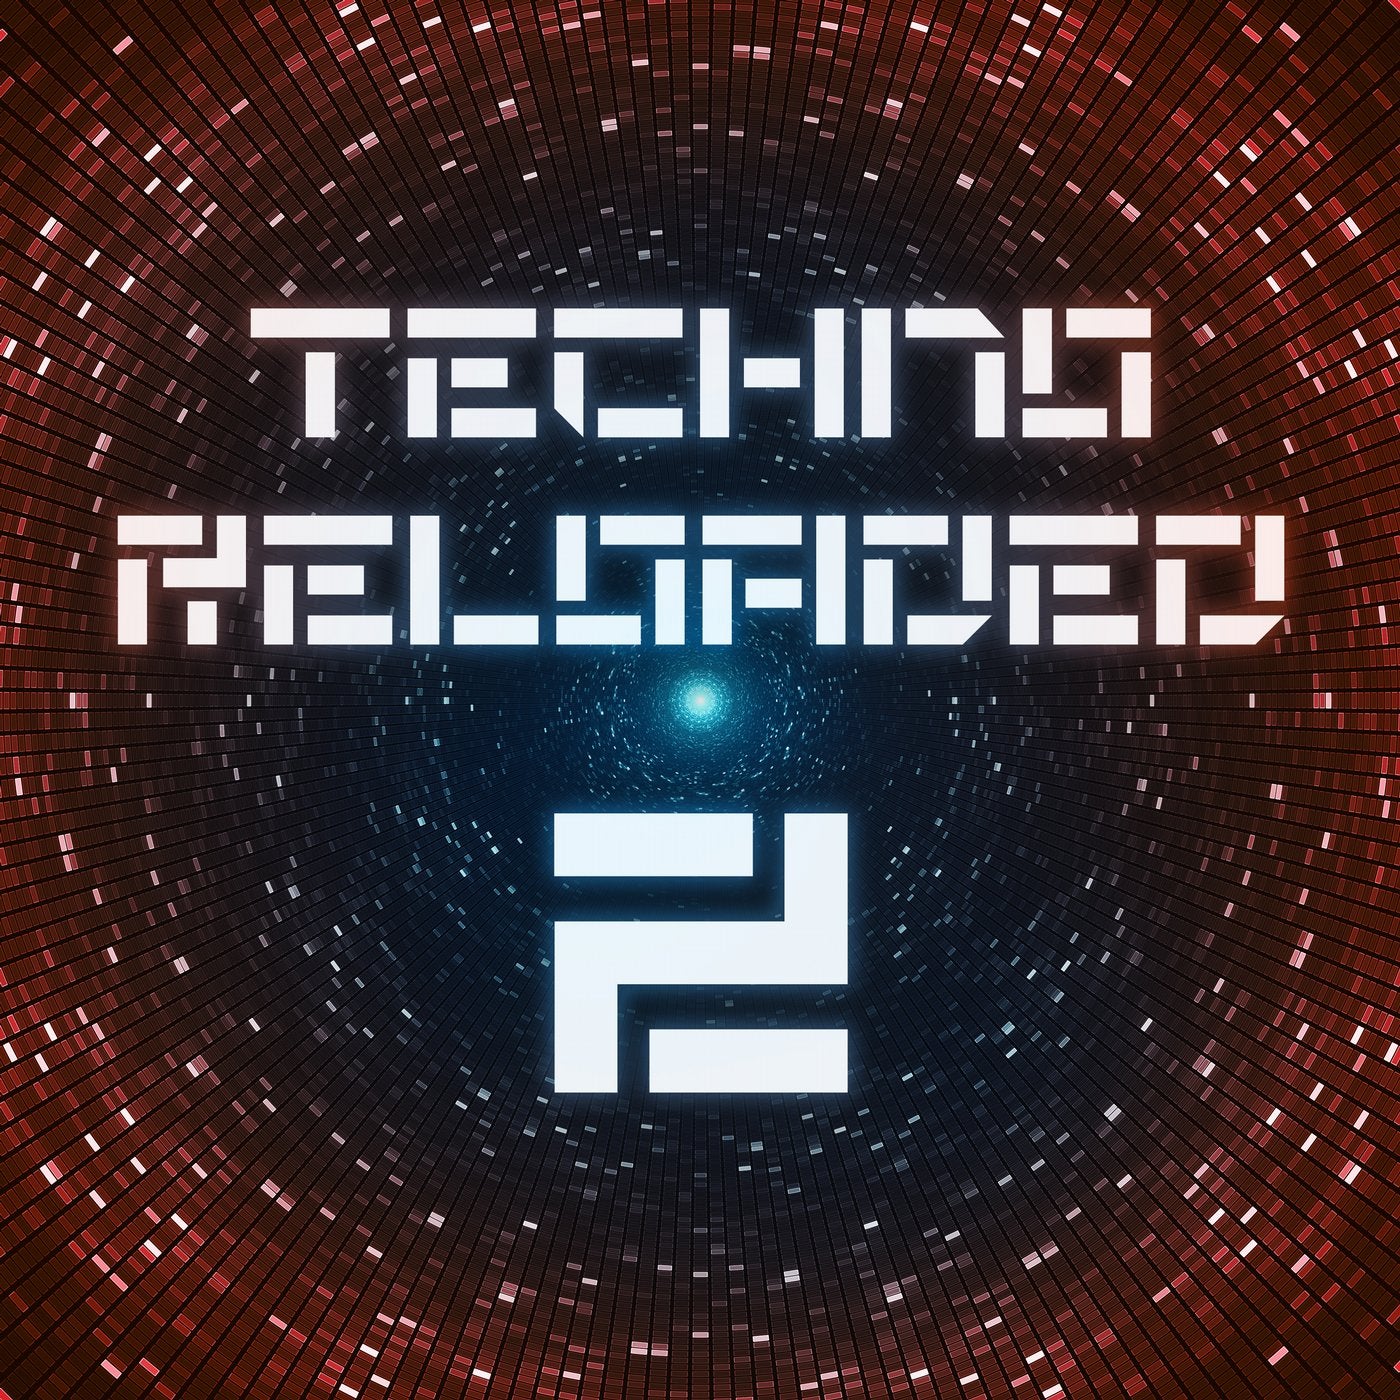 Techno Reloaded, Vol. 2